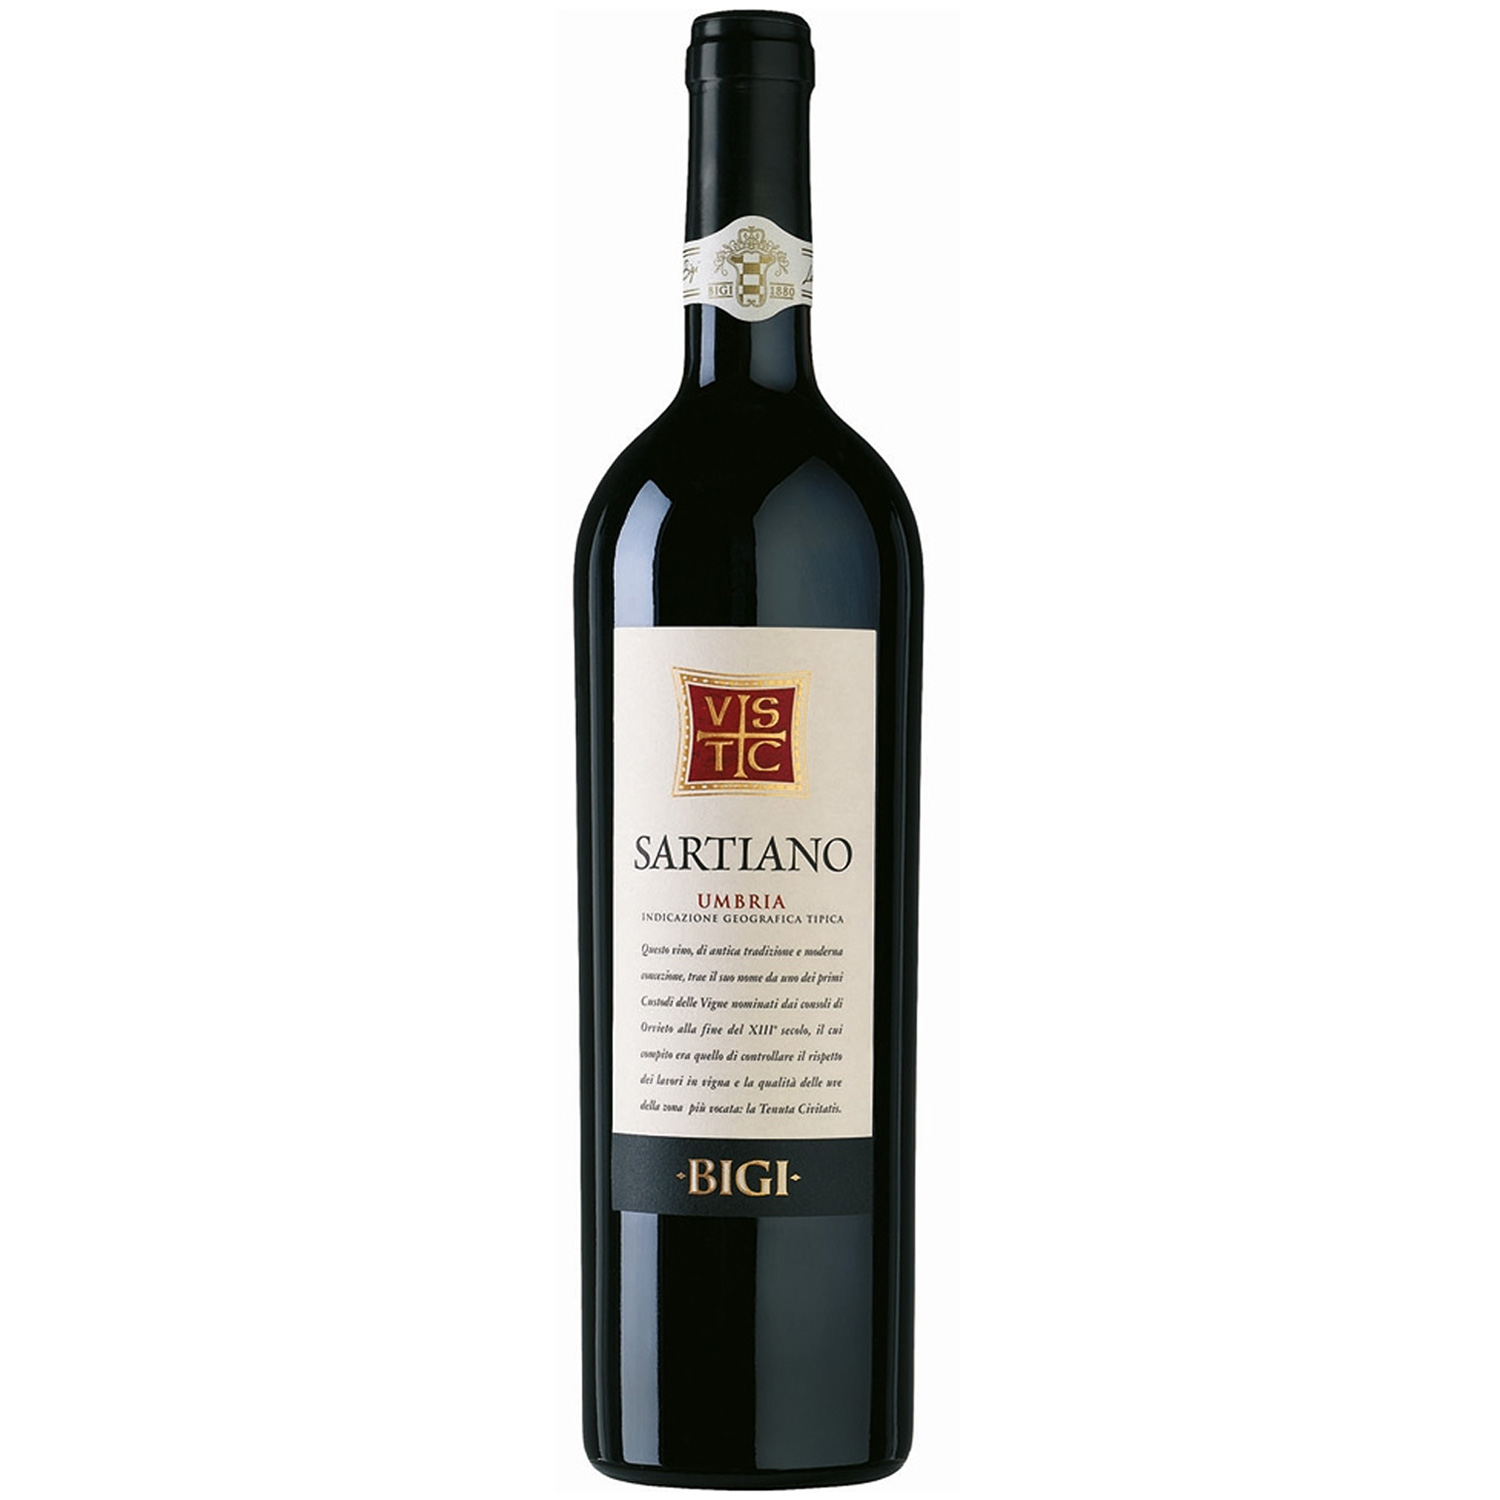 Rotwein hier IGT Sartiano 2017 Nobile online BIGI Umbria Vinum bei Italienischer